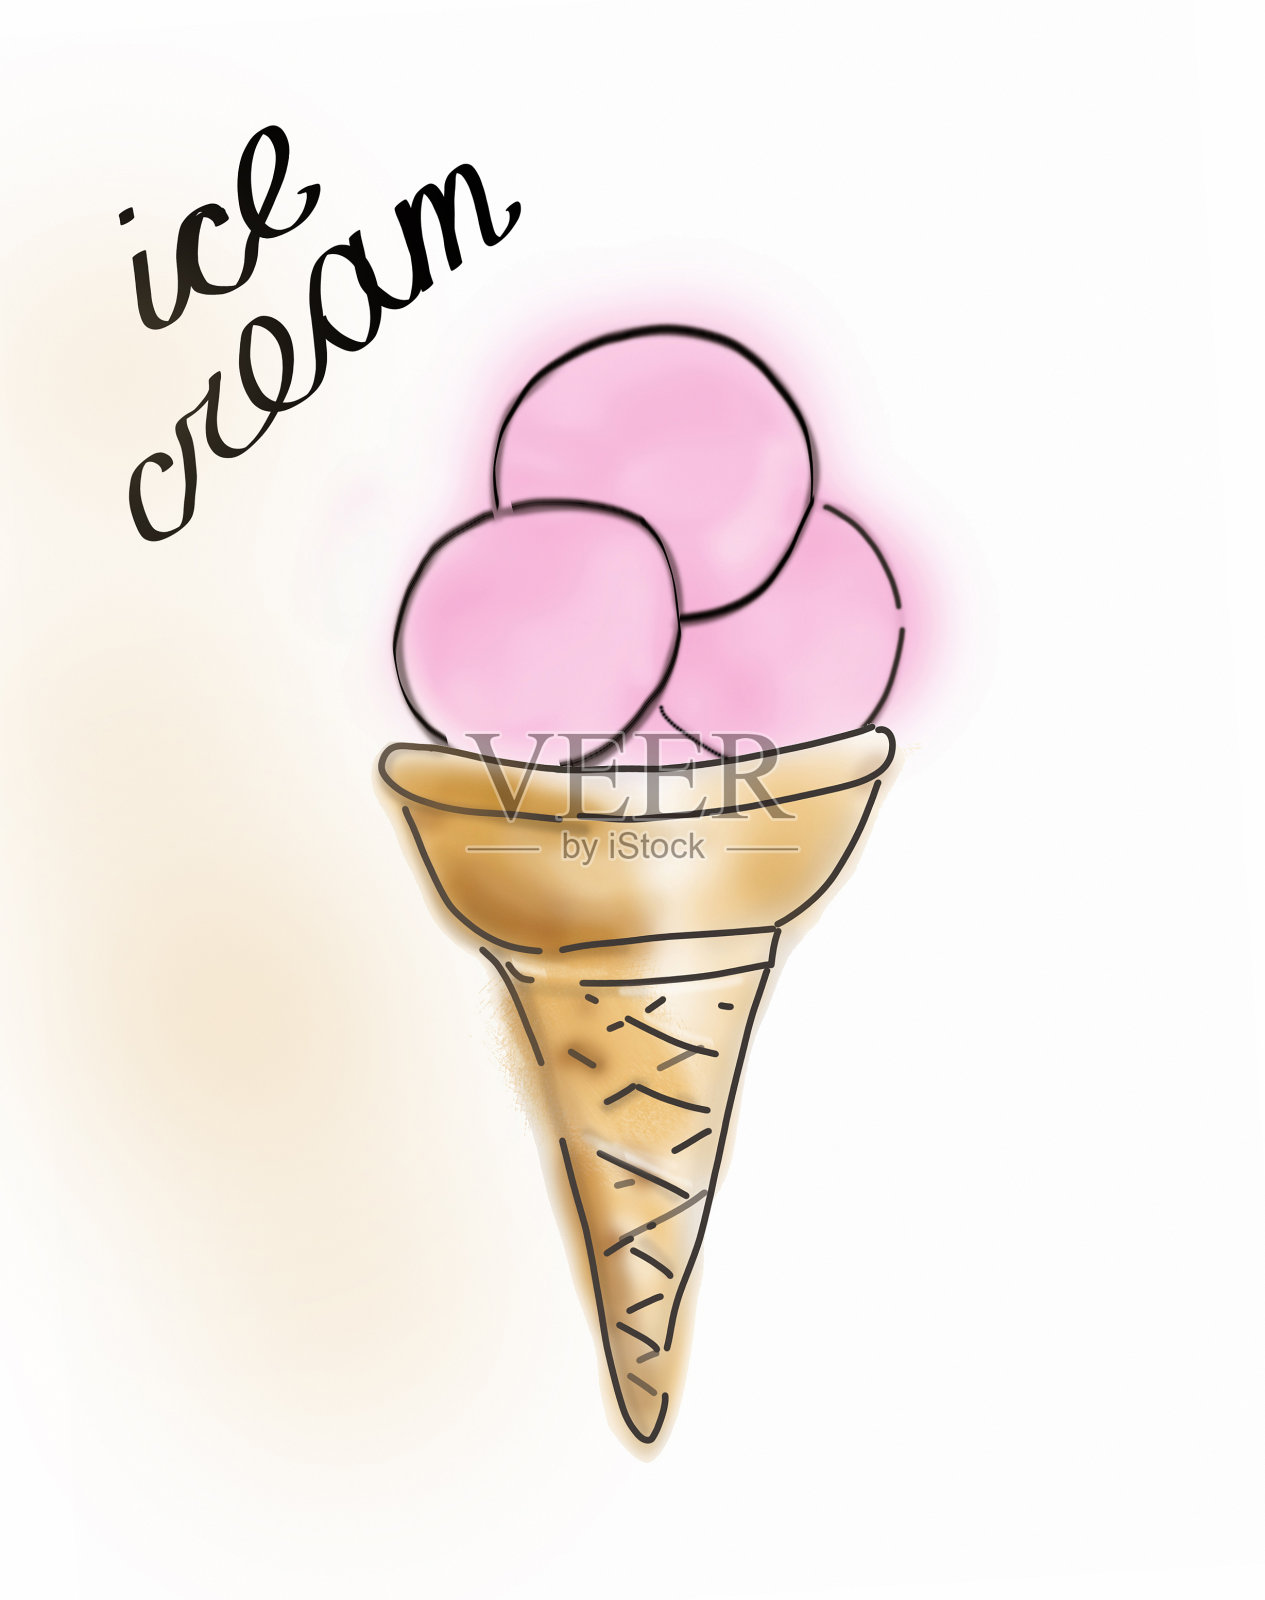 加一勺粉色草莓或覆盆子冰淇淋的华夫蛋筒。素描风格的插图。设计元素图片